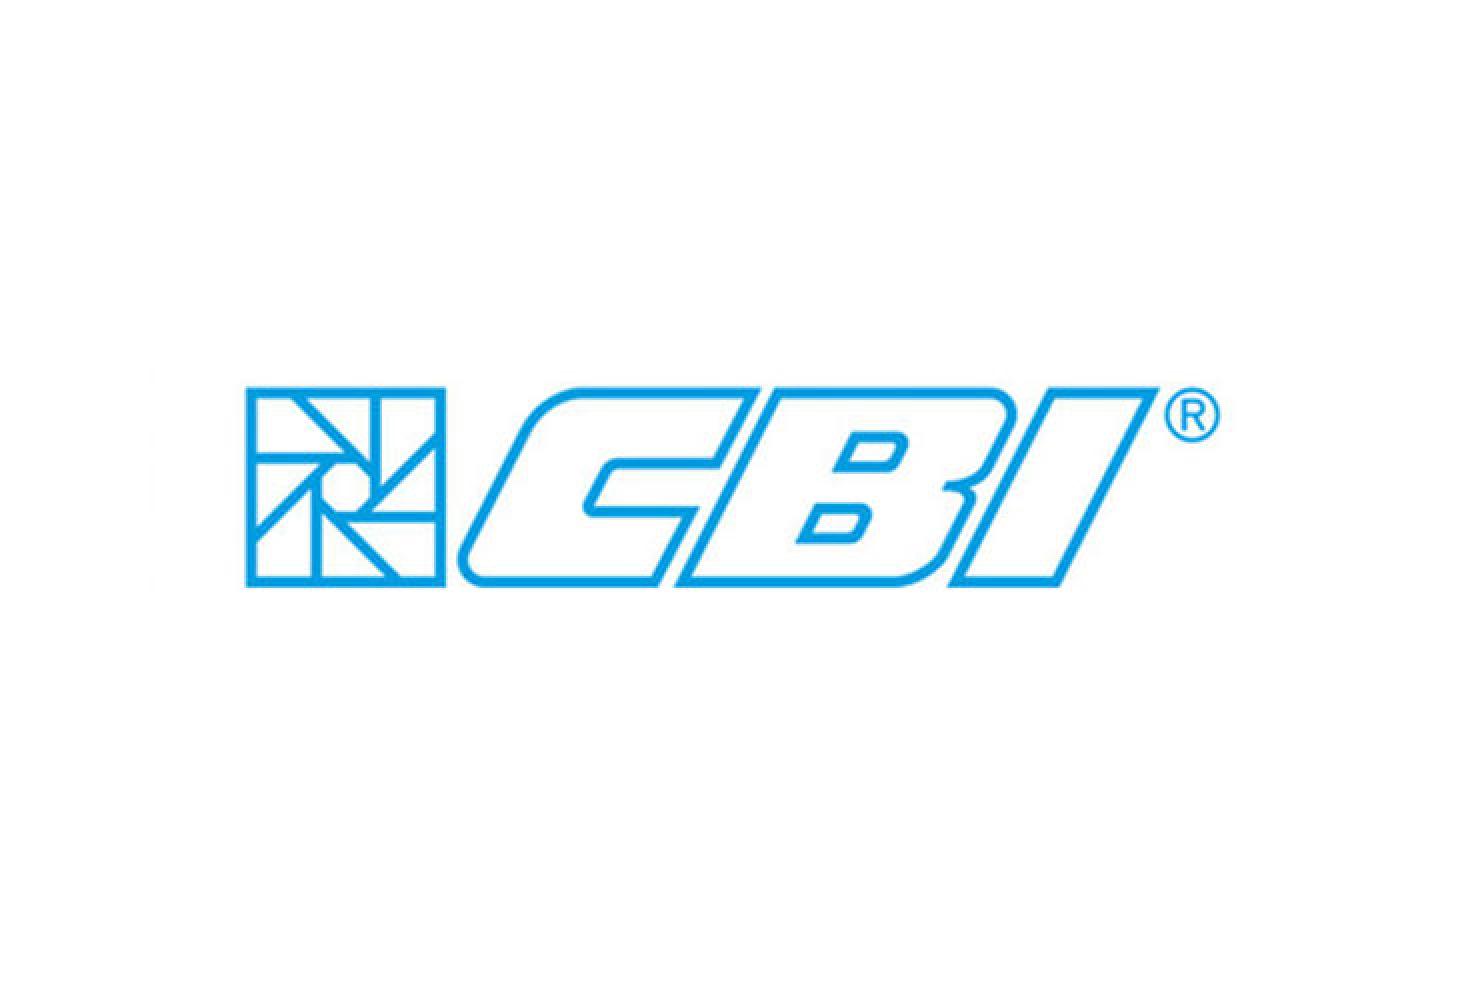 Logo CBI